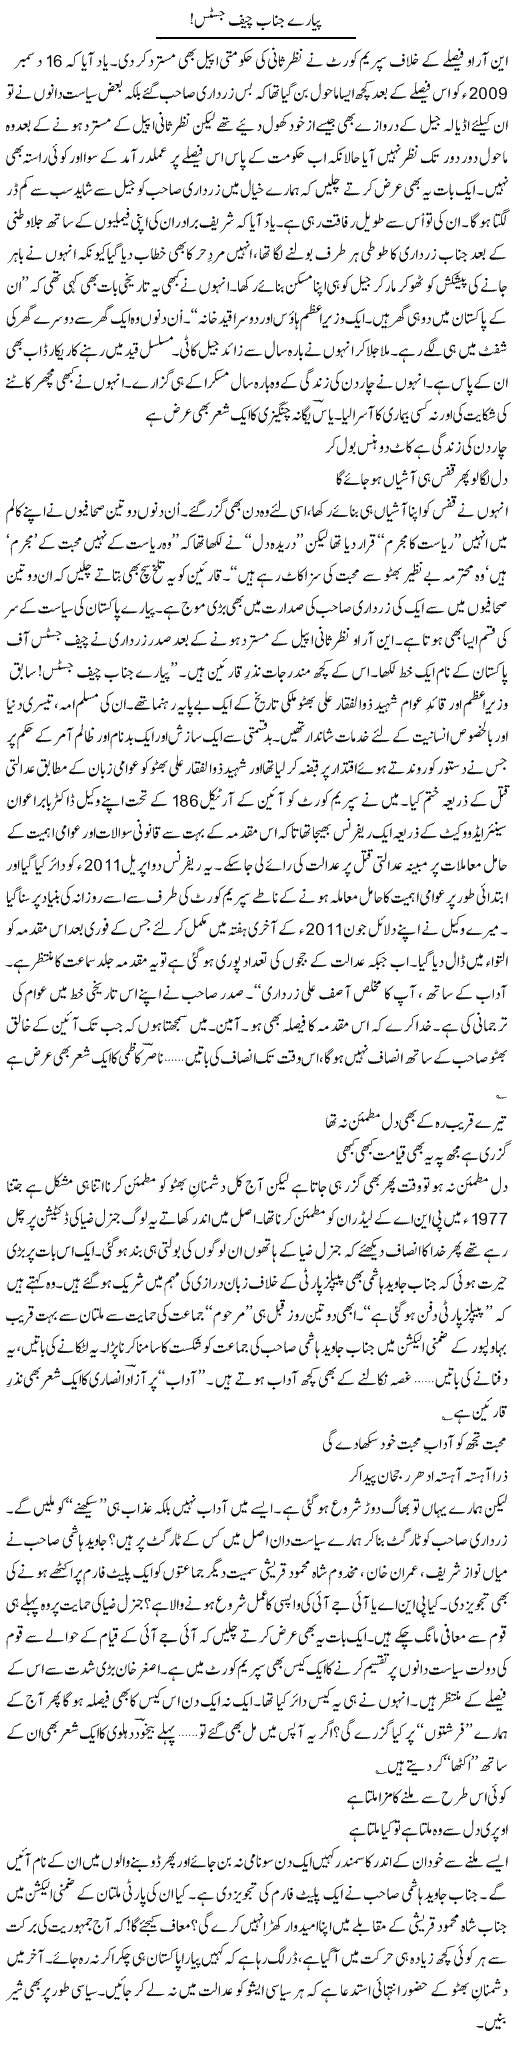 Bhutto Case Express Column Ijaz Khan 1 December 2011